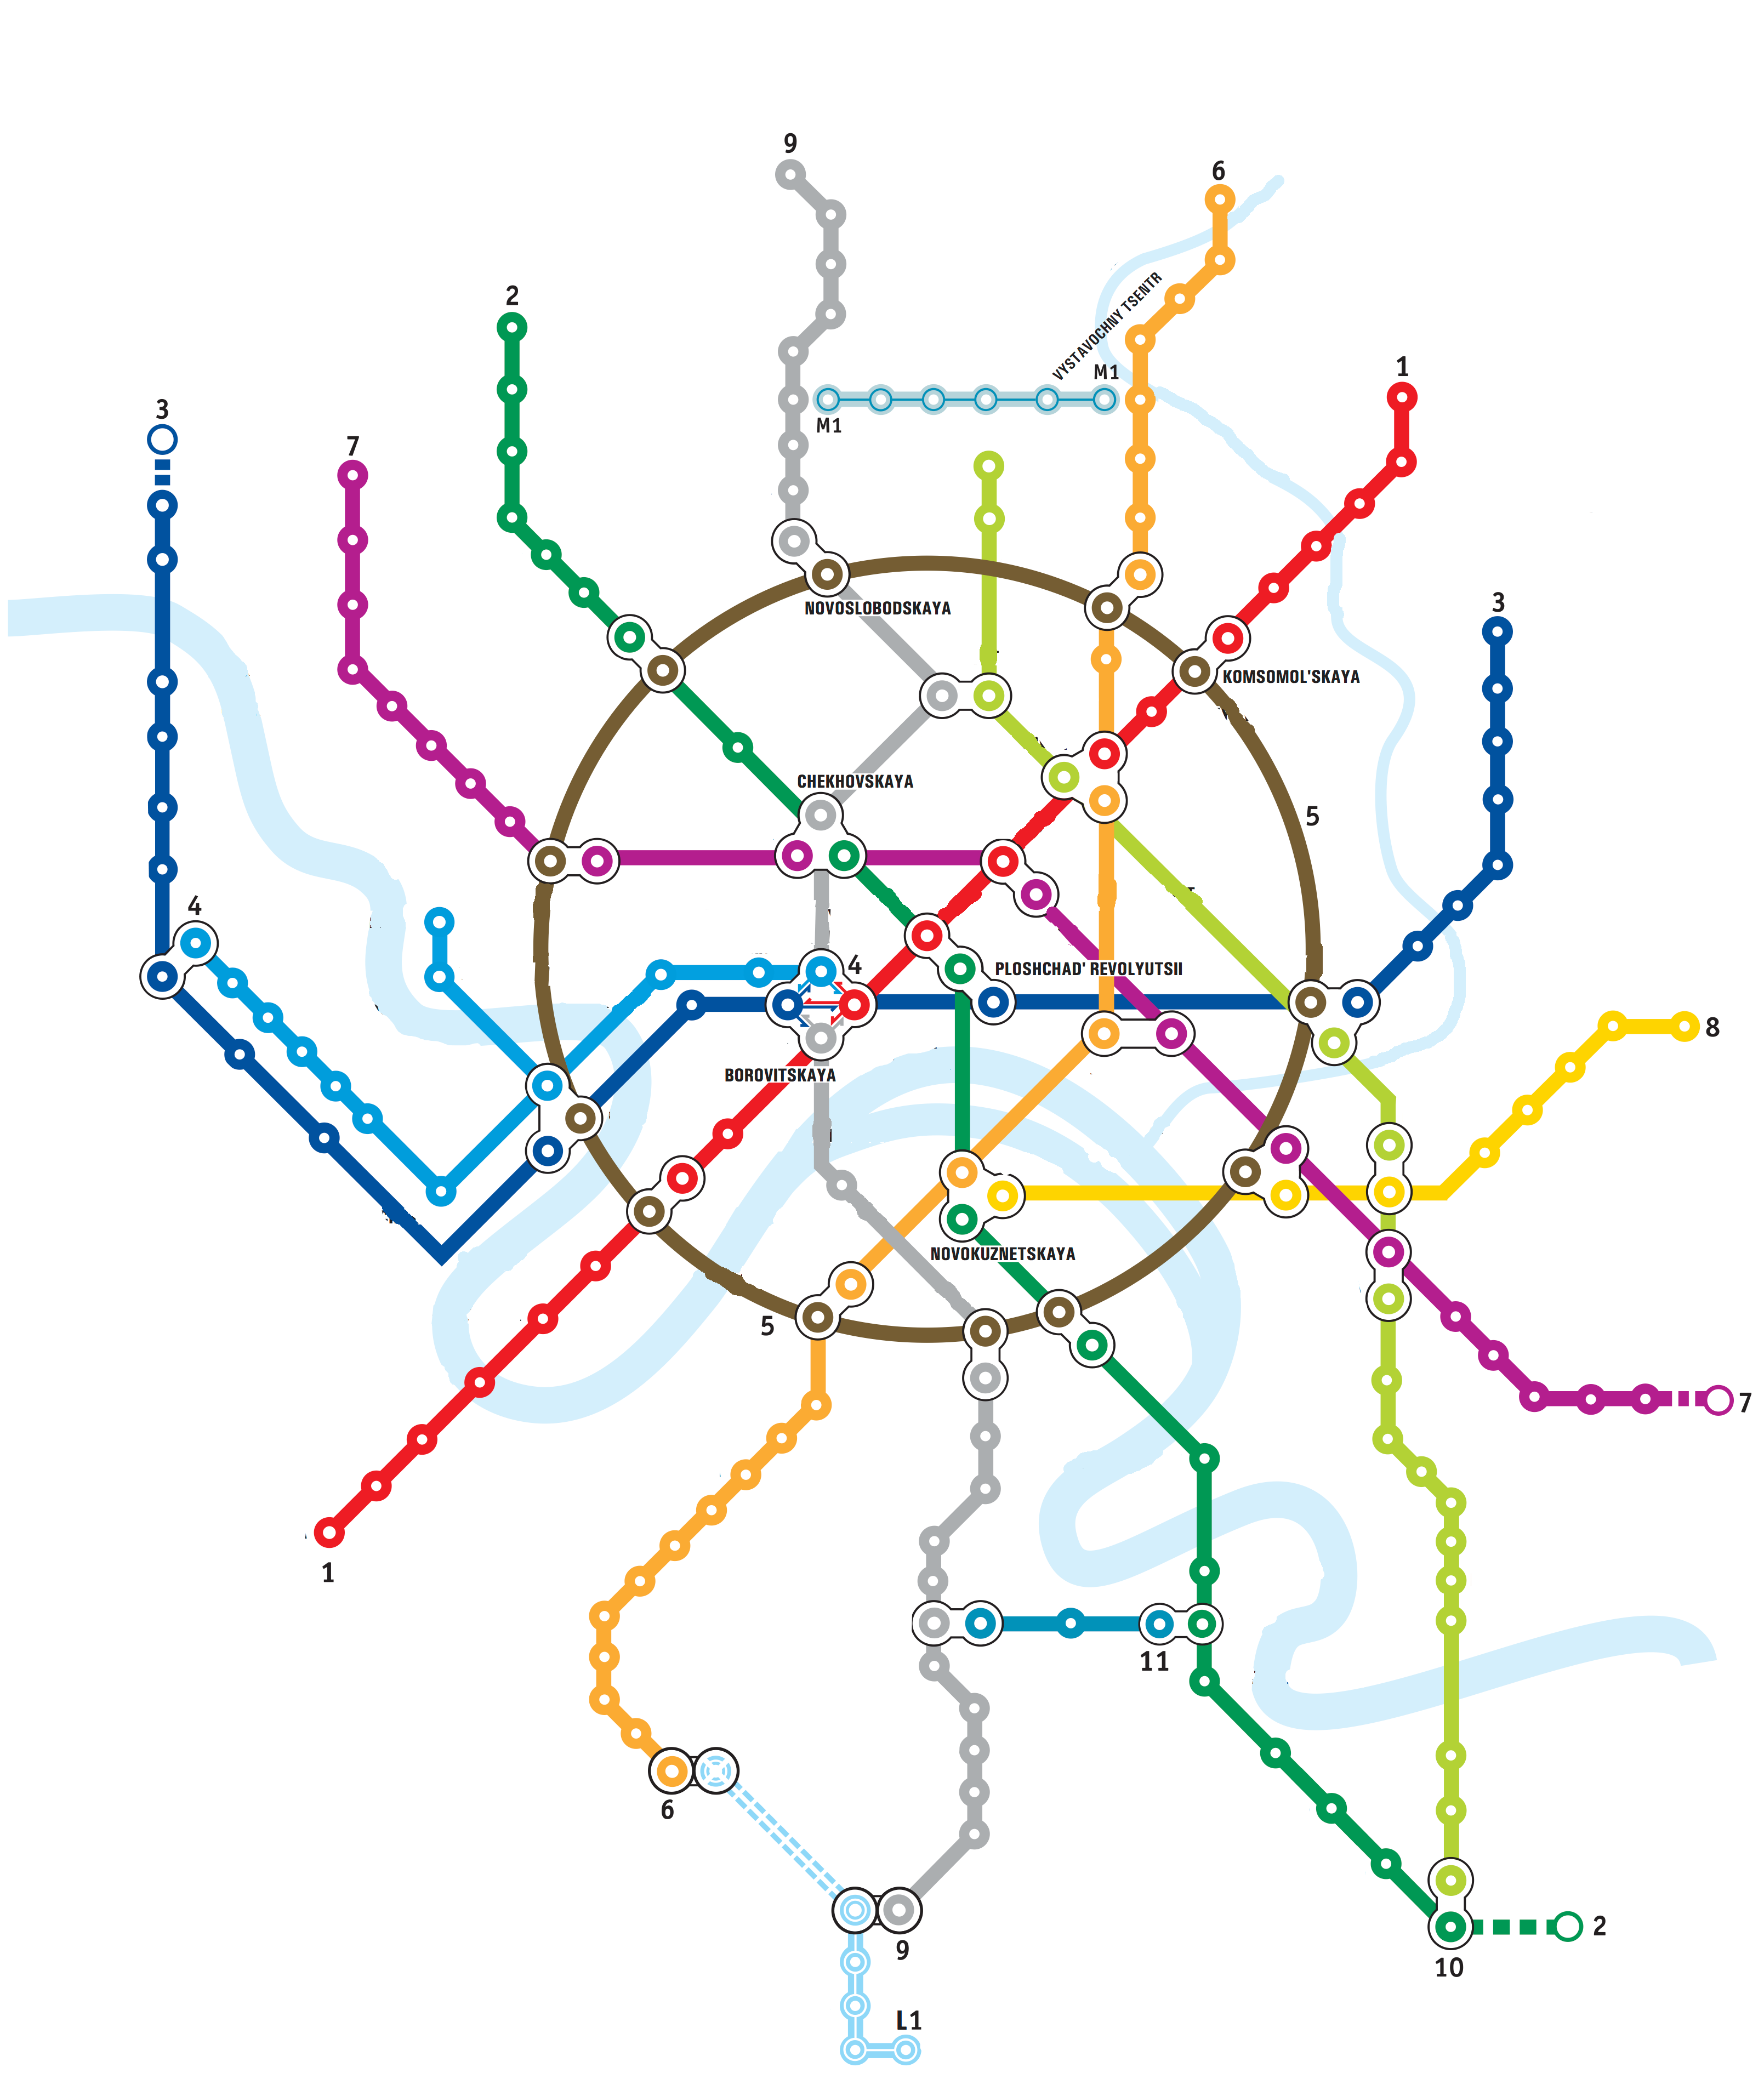 Схема метро в хорошем качестве